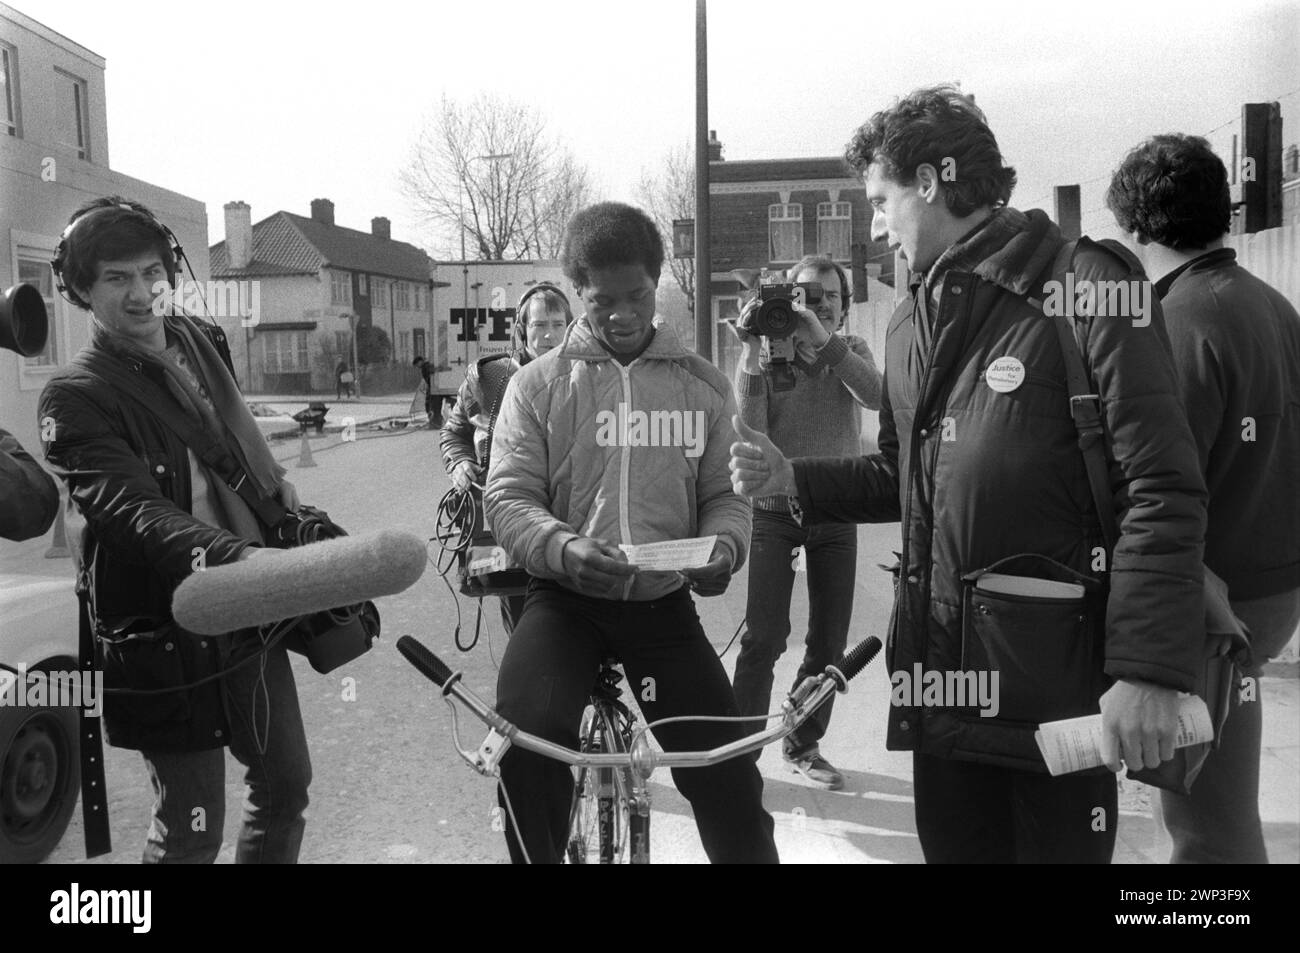 London, England Februar 1983. Peter Tatchell, der Gay-Rights-Aktivist, will auf der Bermondsey durch die Wahl South London in die Labour-Partei als Abgeordneter gewählt werden. Wahlsitzung und Begrüßung im Wahlkreis. Er trägt ein "Gerechtigkeit für die Rentner"-Abzeichen, TV-Nachrichten-Crews folgen ihm. 1980er Jahre HOMER SYKES Stockfoto